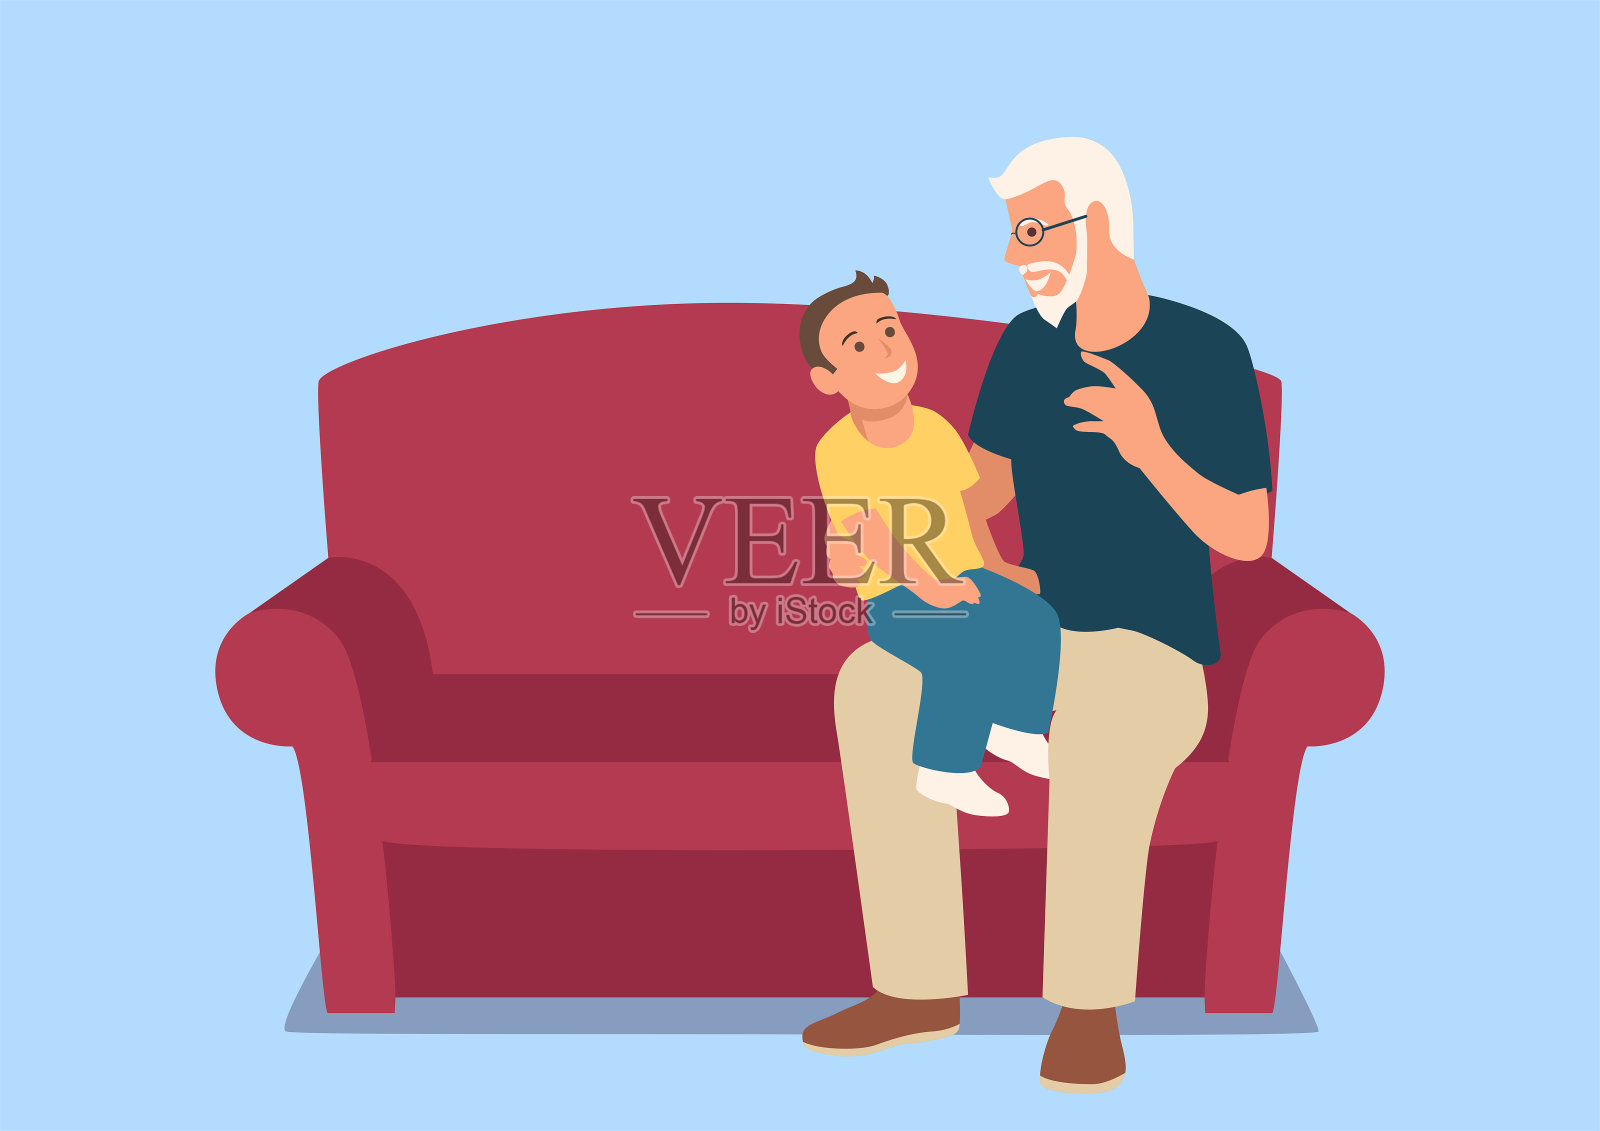 爷爷和孙子坐在沙发上插画图片素材